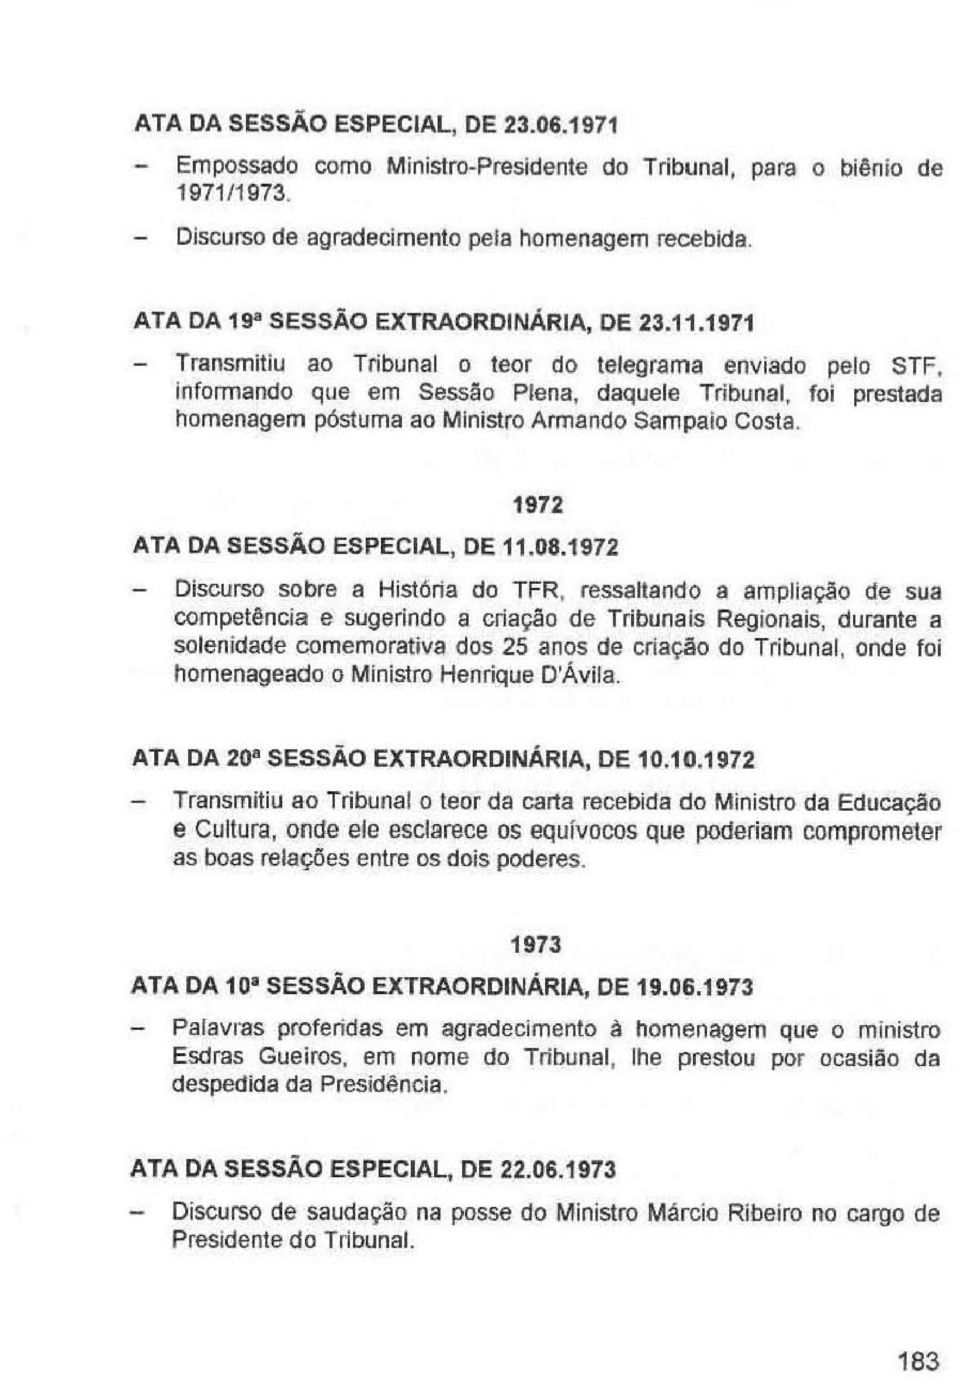 1971 - Transmitiu ao Tribunal o leor do telegrama enviado pelo STF, Informando que em Sessão Plena, daquele Tribunal, foi prestada homenagem póstuma ao Ministro Armando Sampaio Costa.